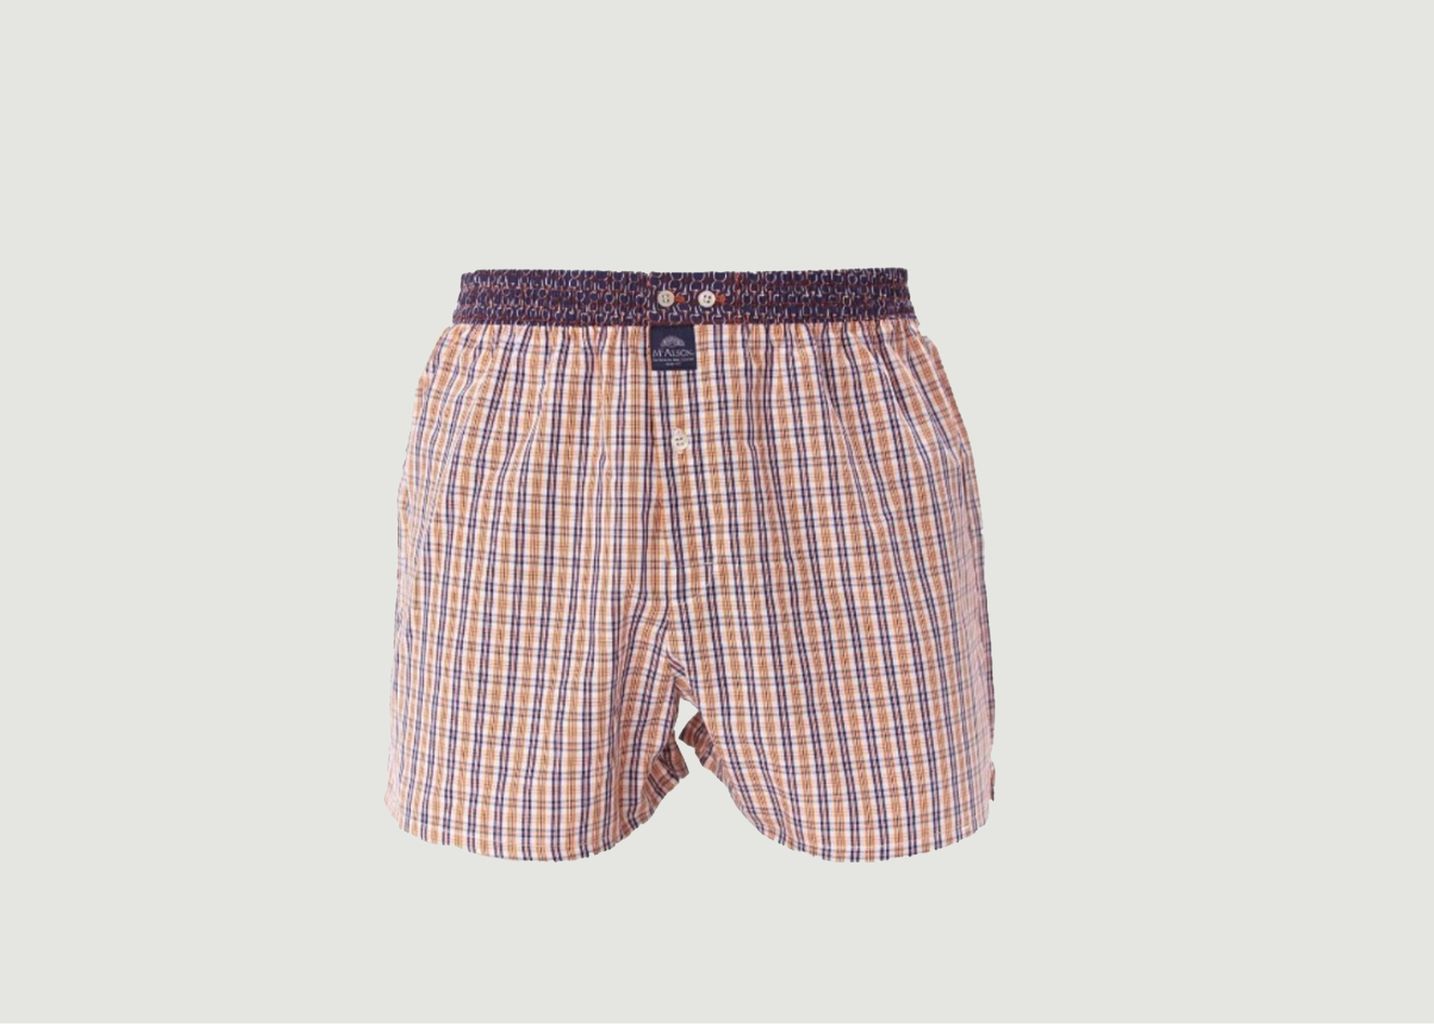 Checked cotton boxer shorts - Mc Alson